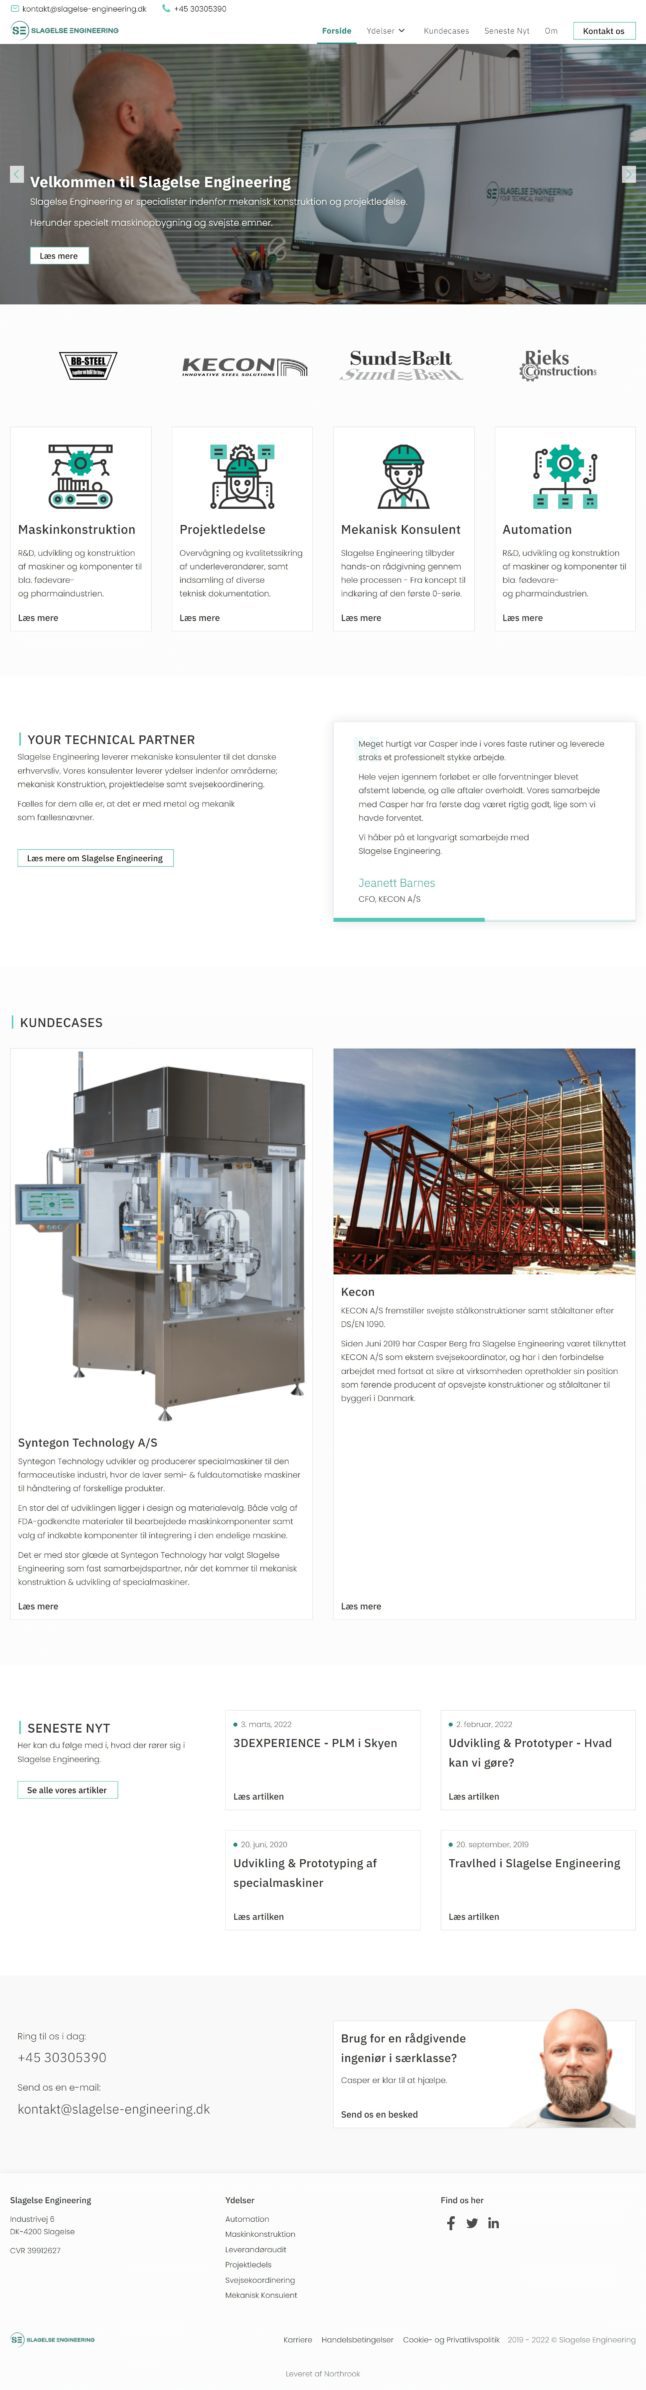 A screenshot of slagelse-engineering.dk as viewed on a desktop computer.